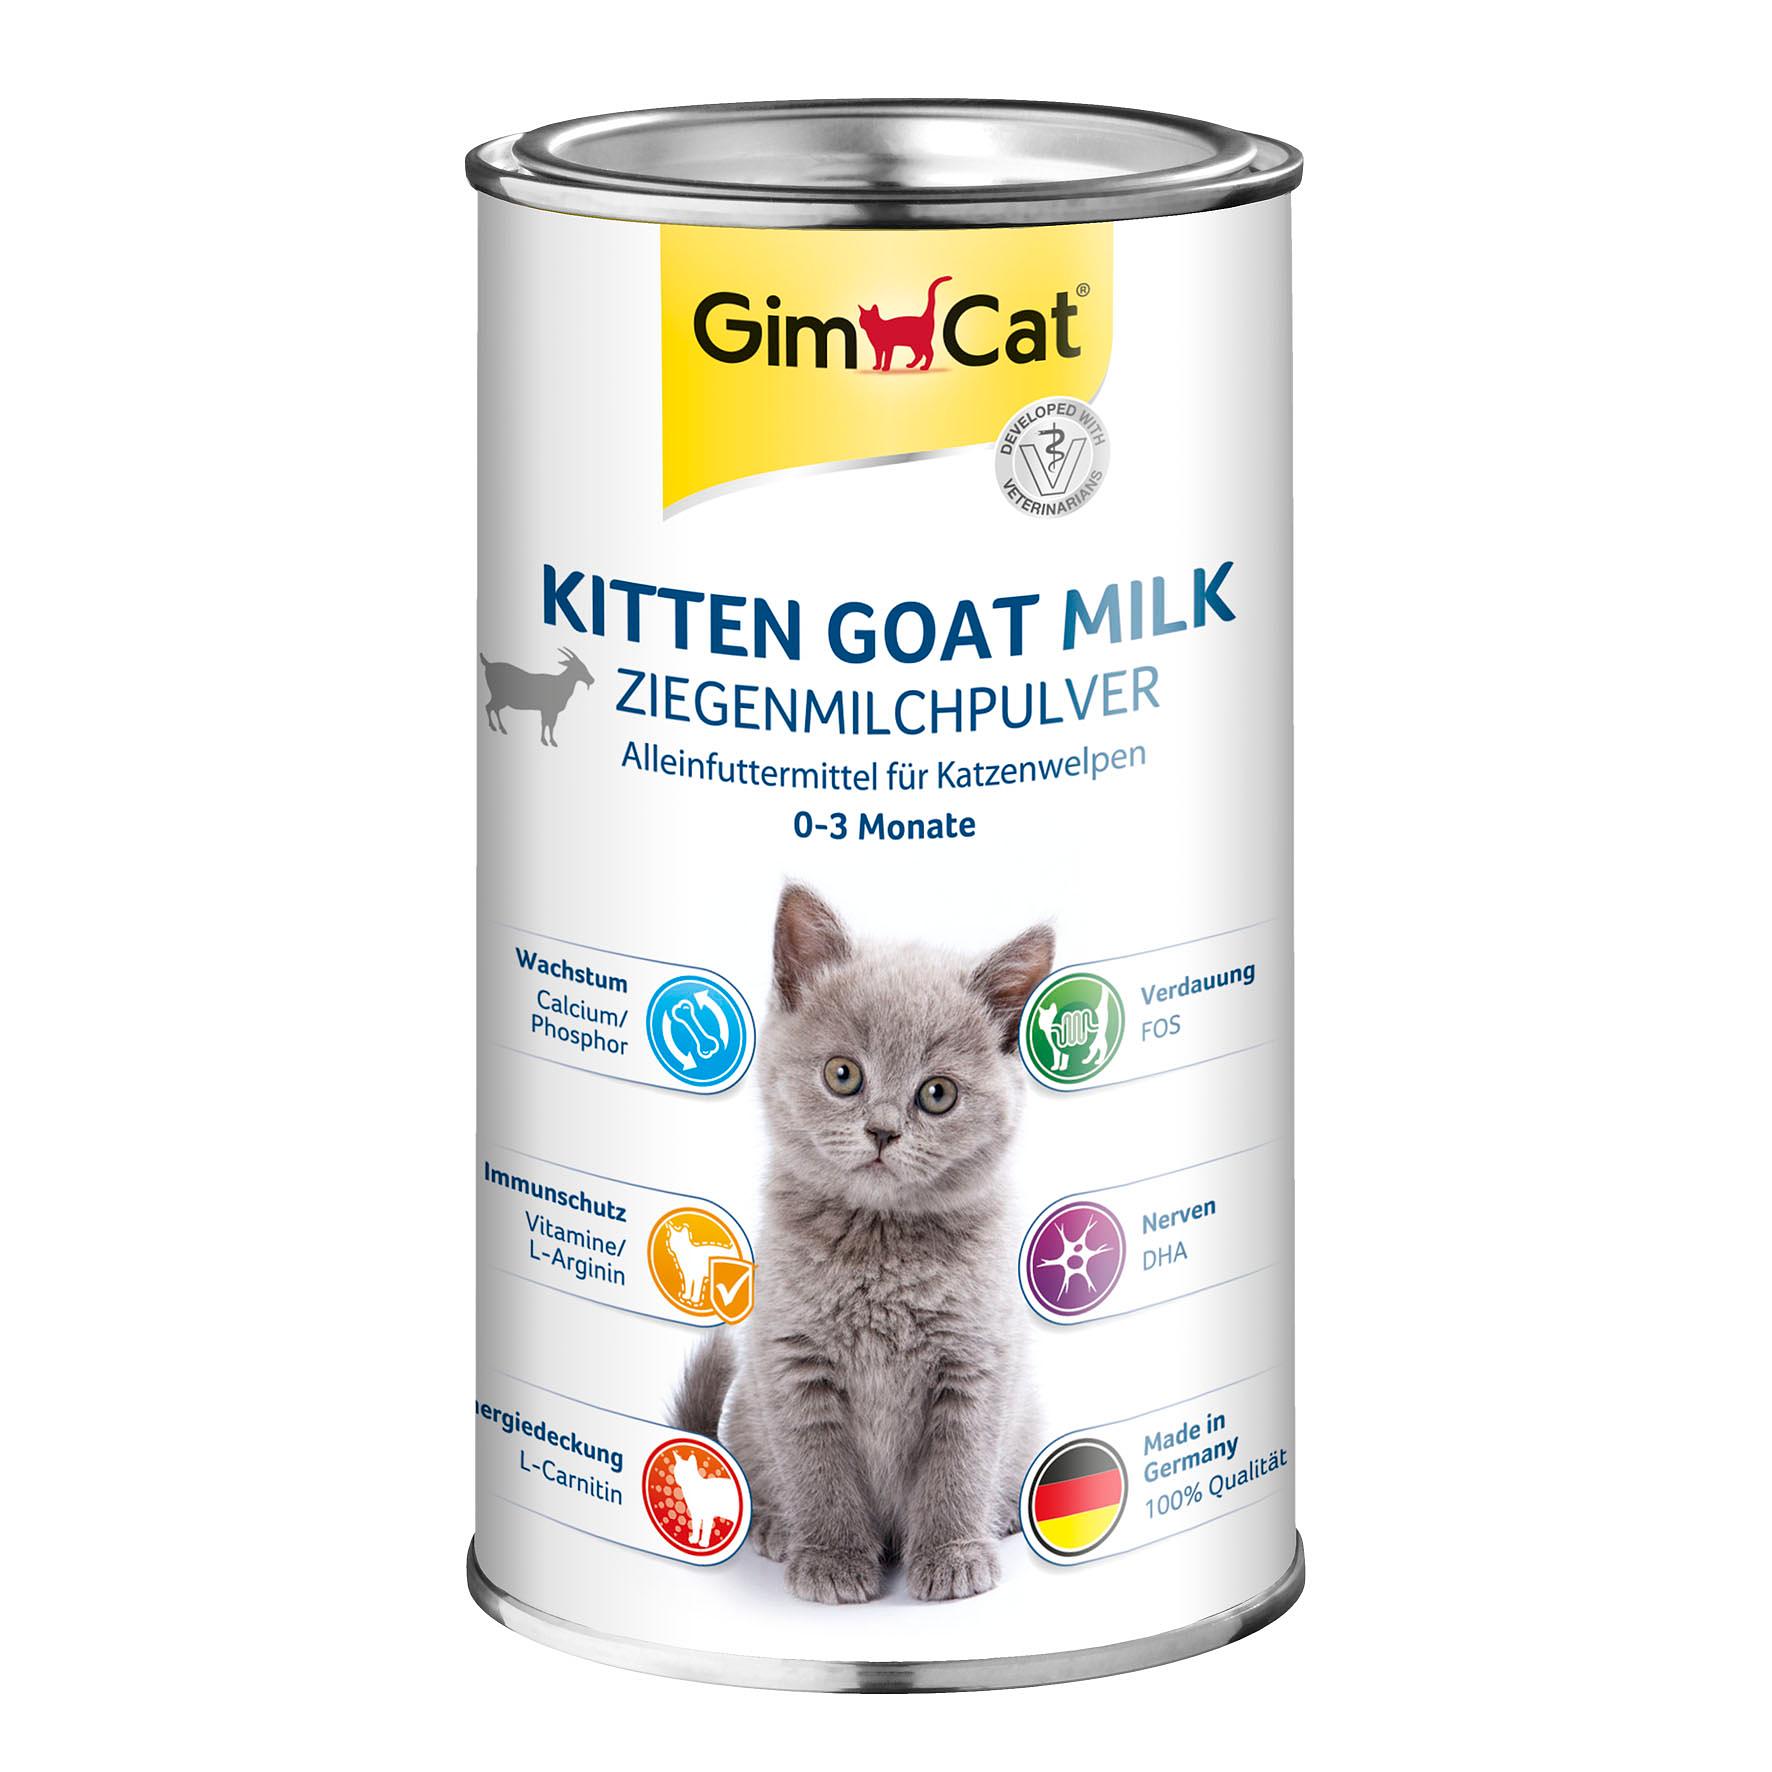 Gimpet Milch für Katzen 200ml